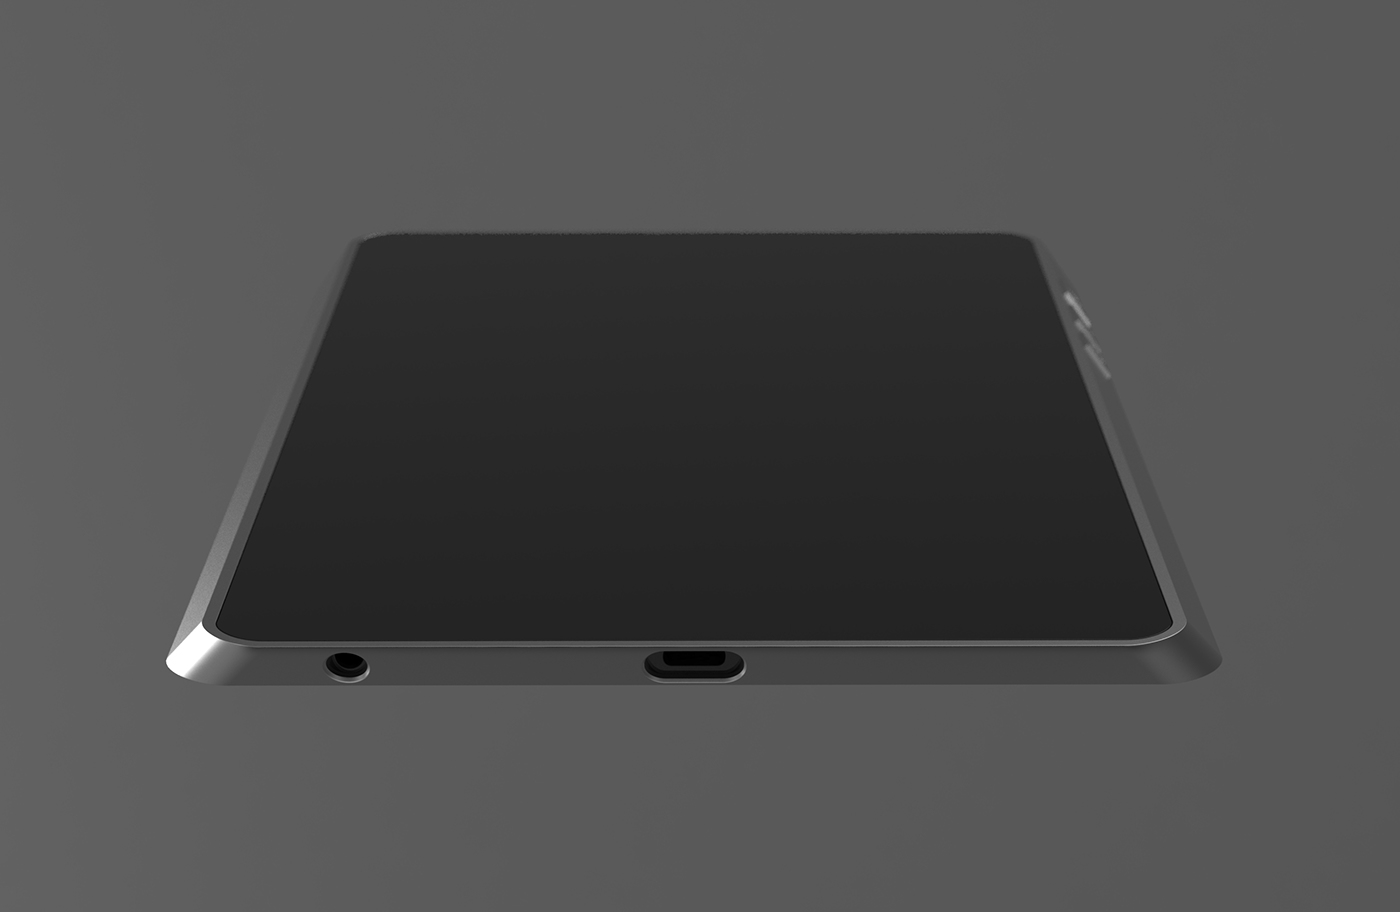 8" tablet PC portable premium aluminum frame optical illusion 3Q Qualcomm Wi-Fi 4g